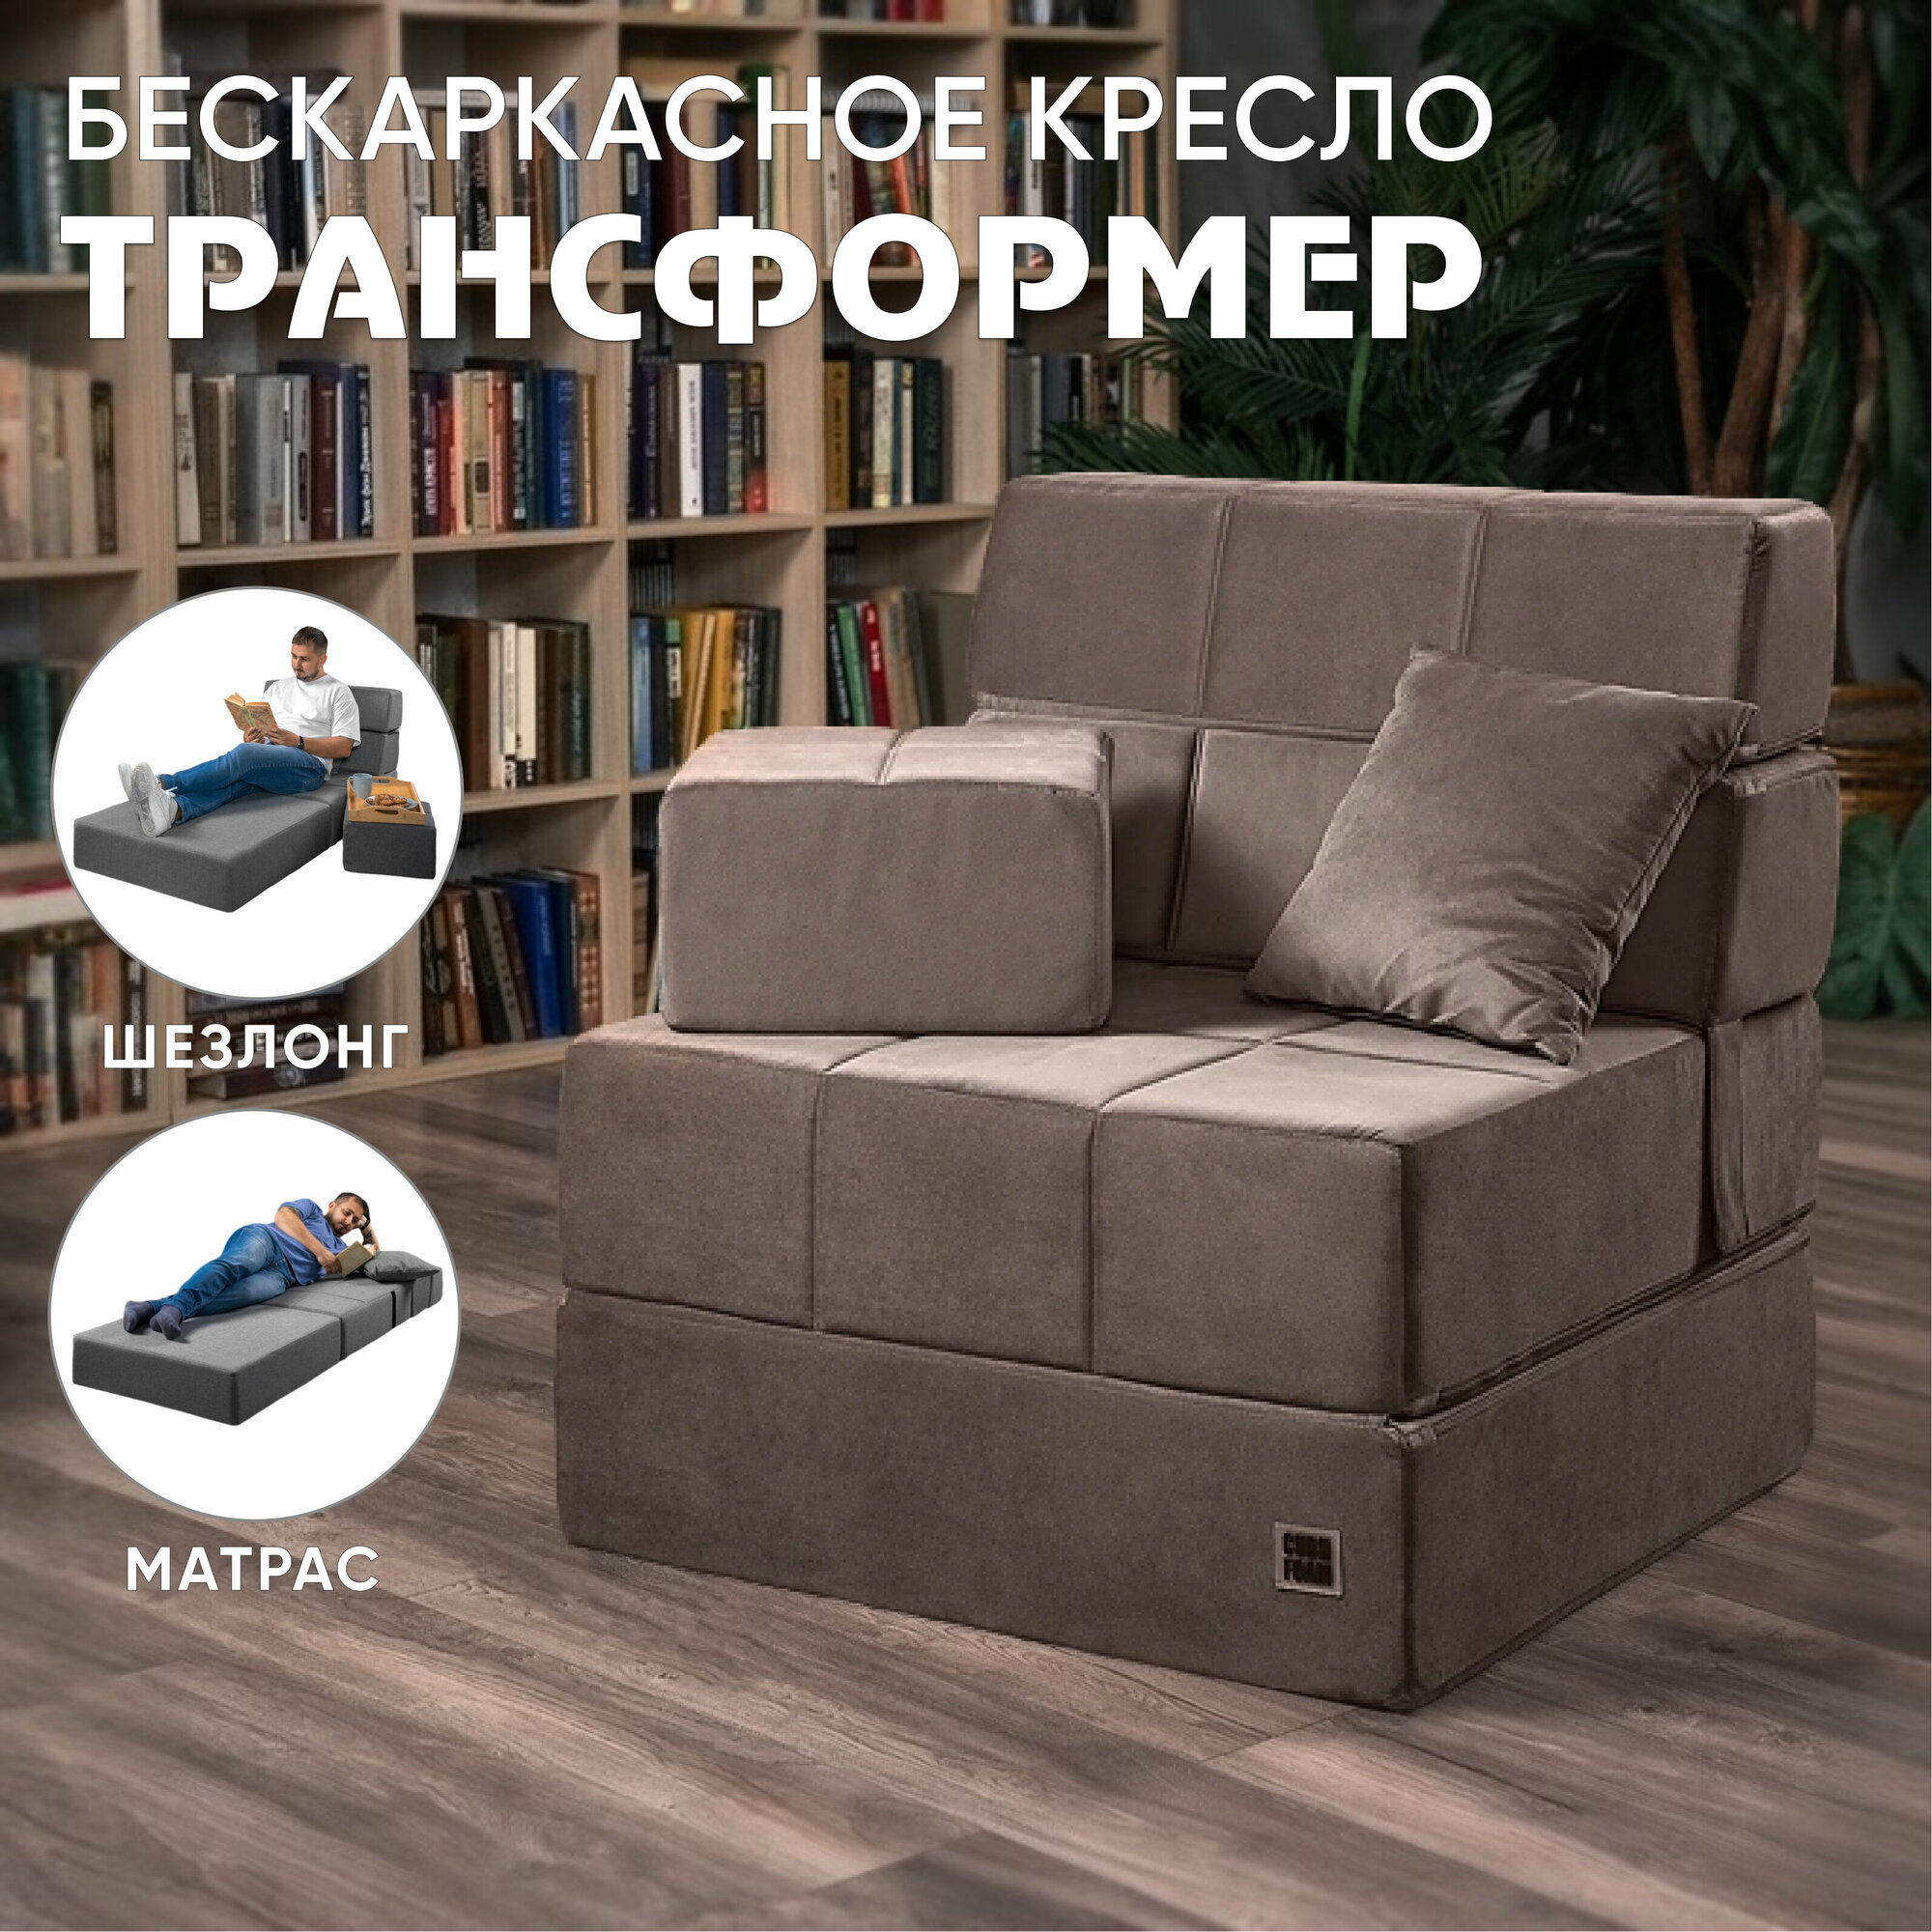 Бескаркасный коричневый диван MaxiCubes